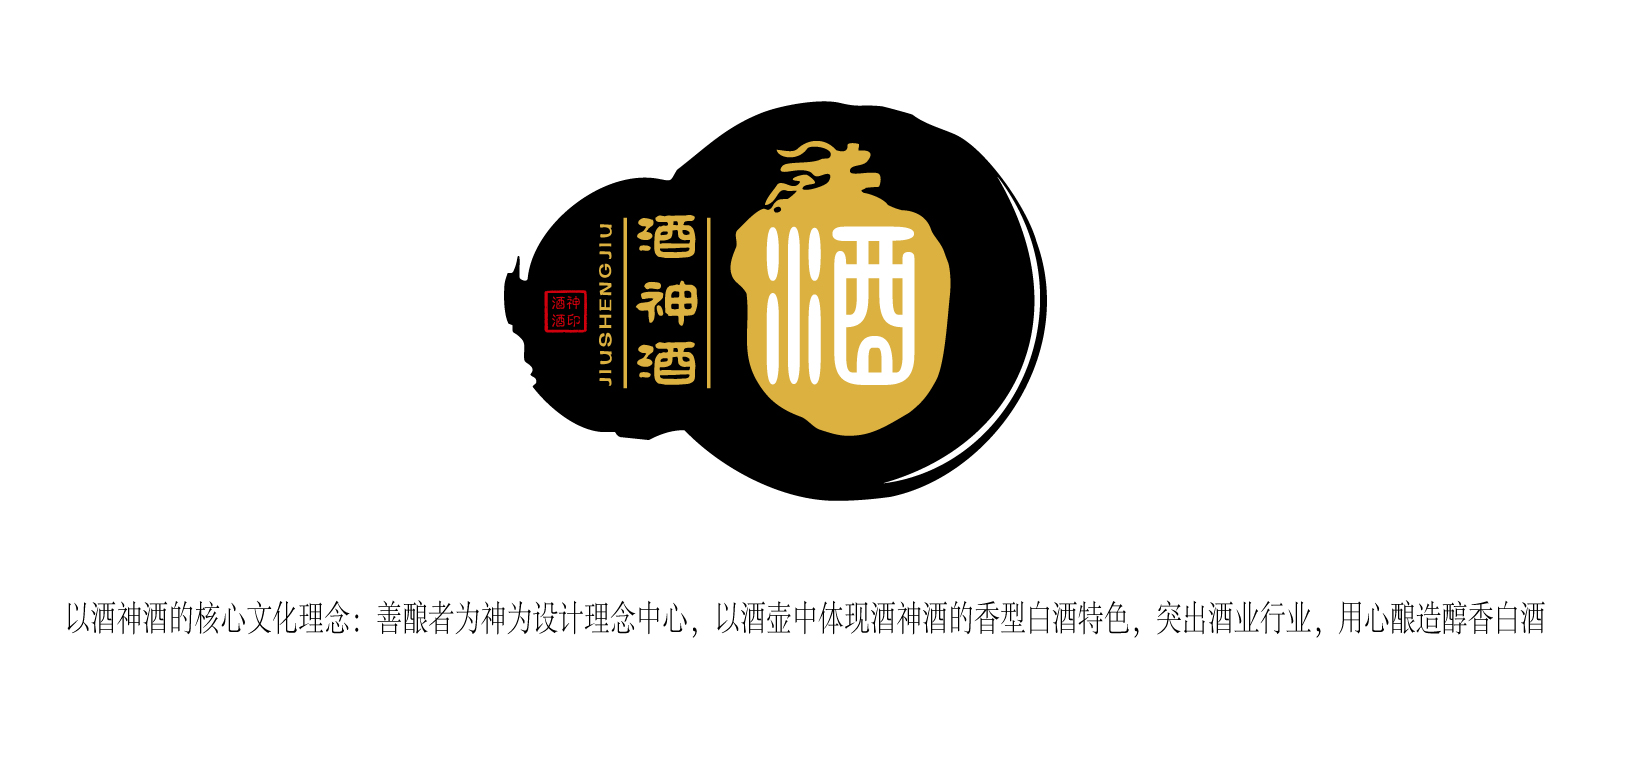 贵州酒神酒品牌logo设计第24356011号稿件